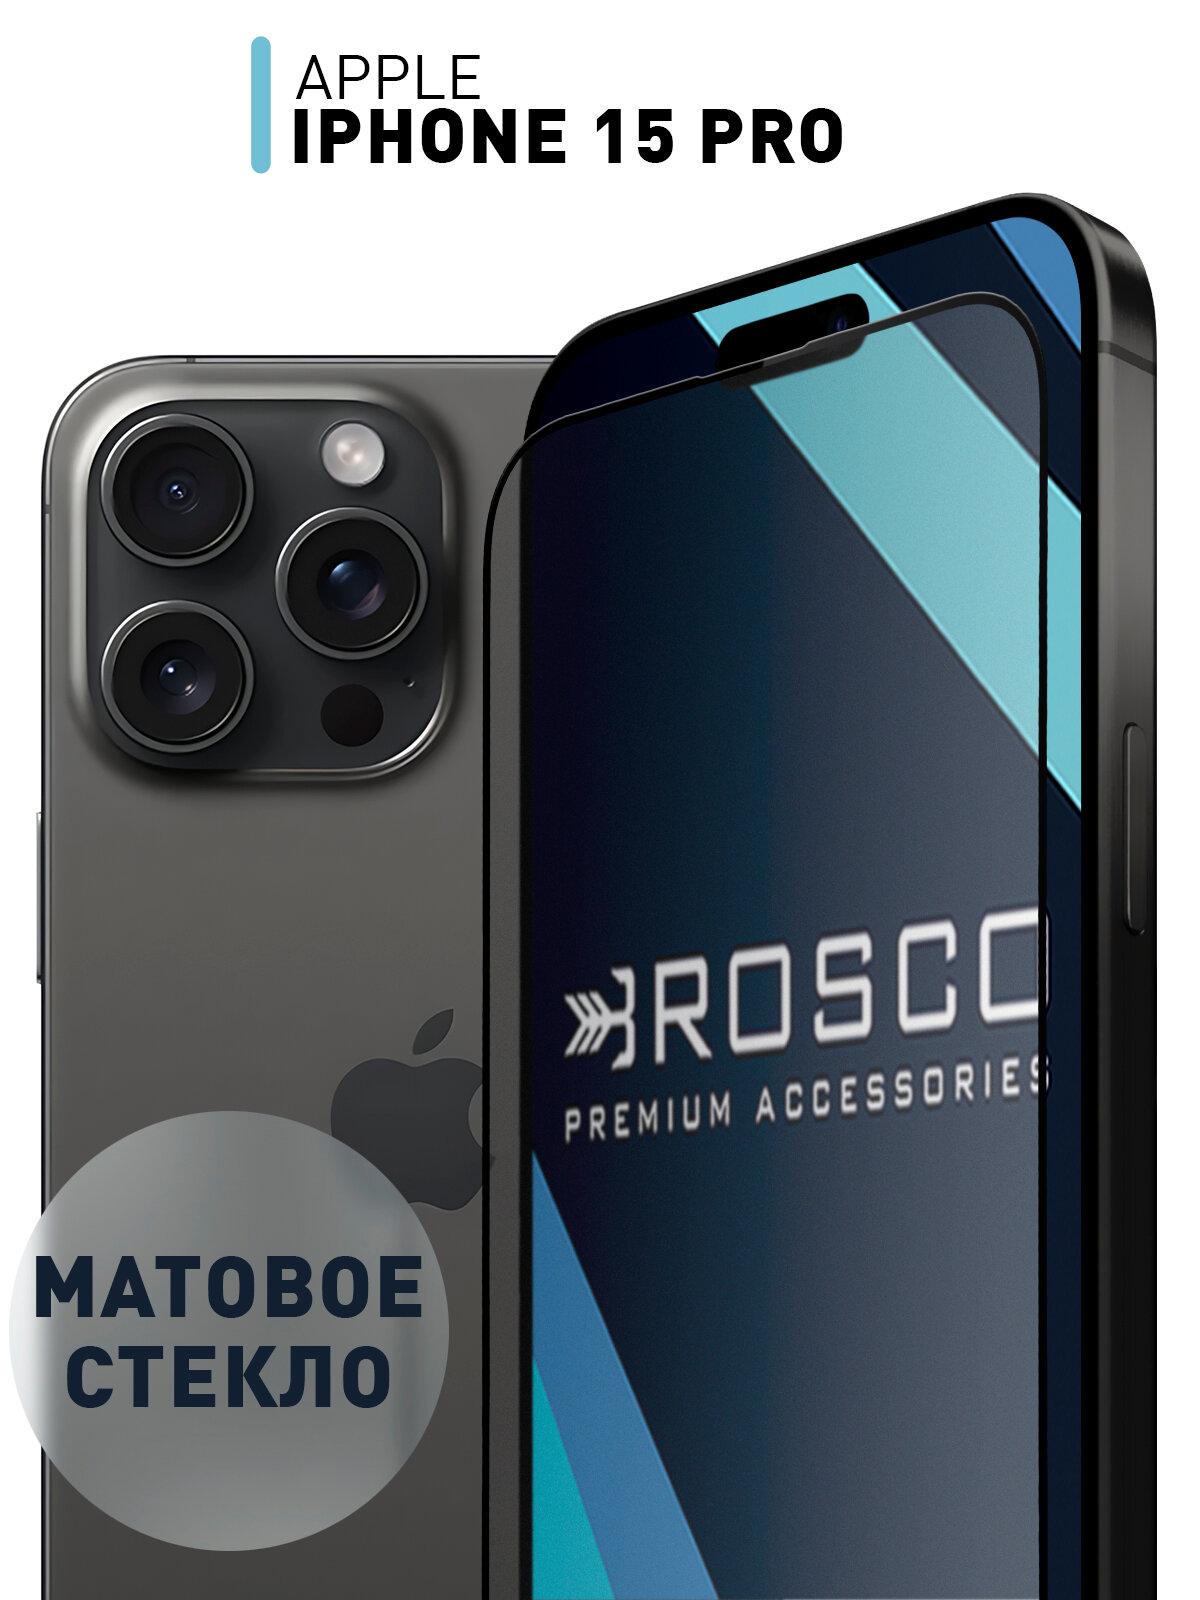 Защитное стекло ROSCO для Apple iPhone 15 Pro (Эпл Айфон 15 Про) матовое стекло, с олеофобным покрытием, прозрачное стекло, с рамкой